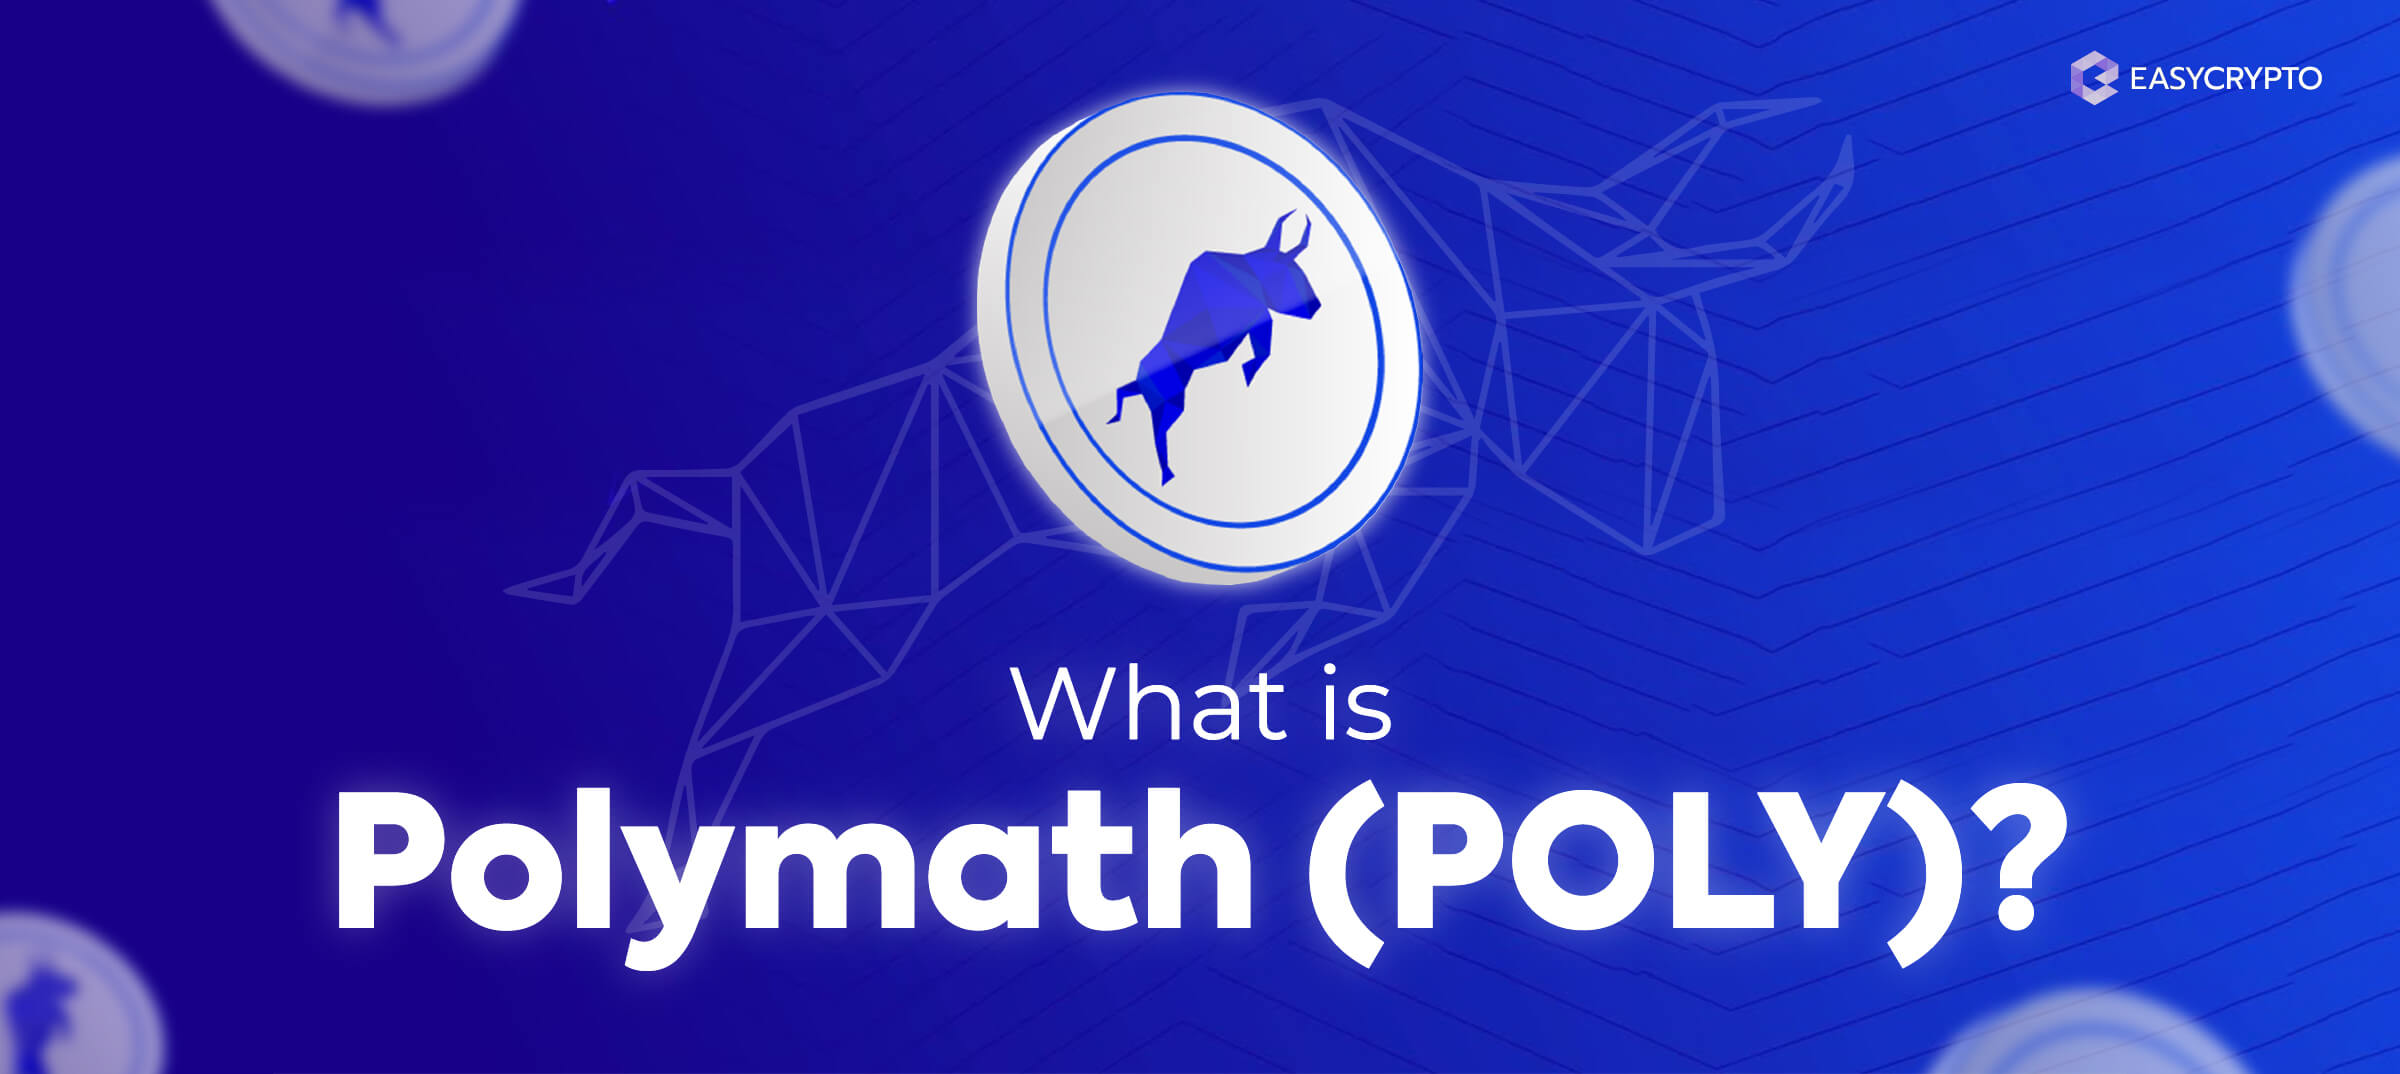 should i buy polymath crypto